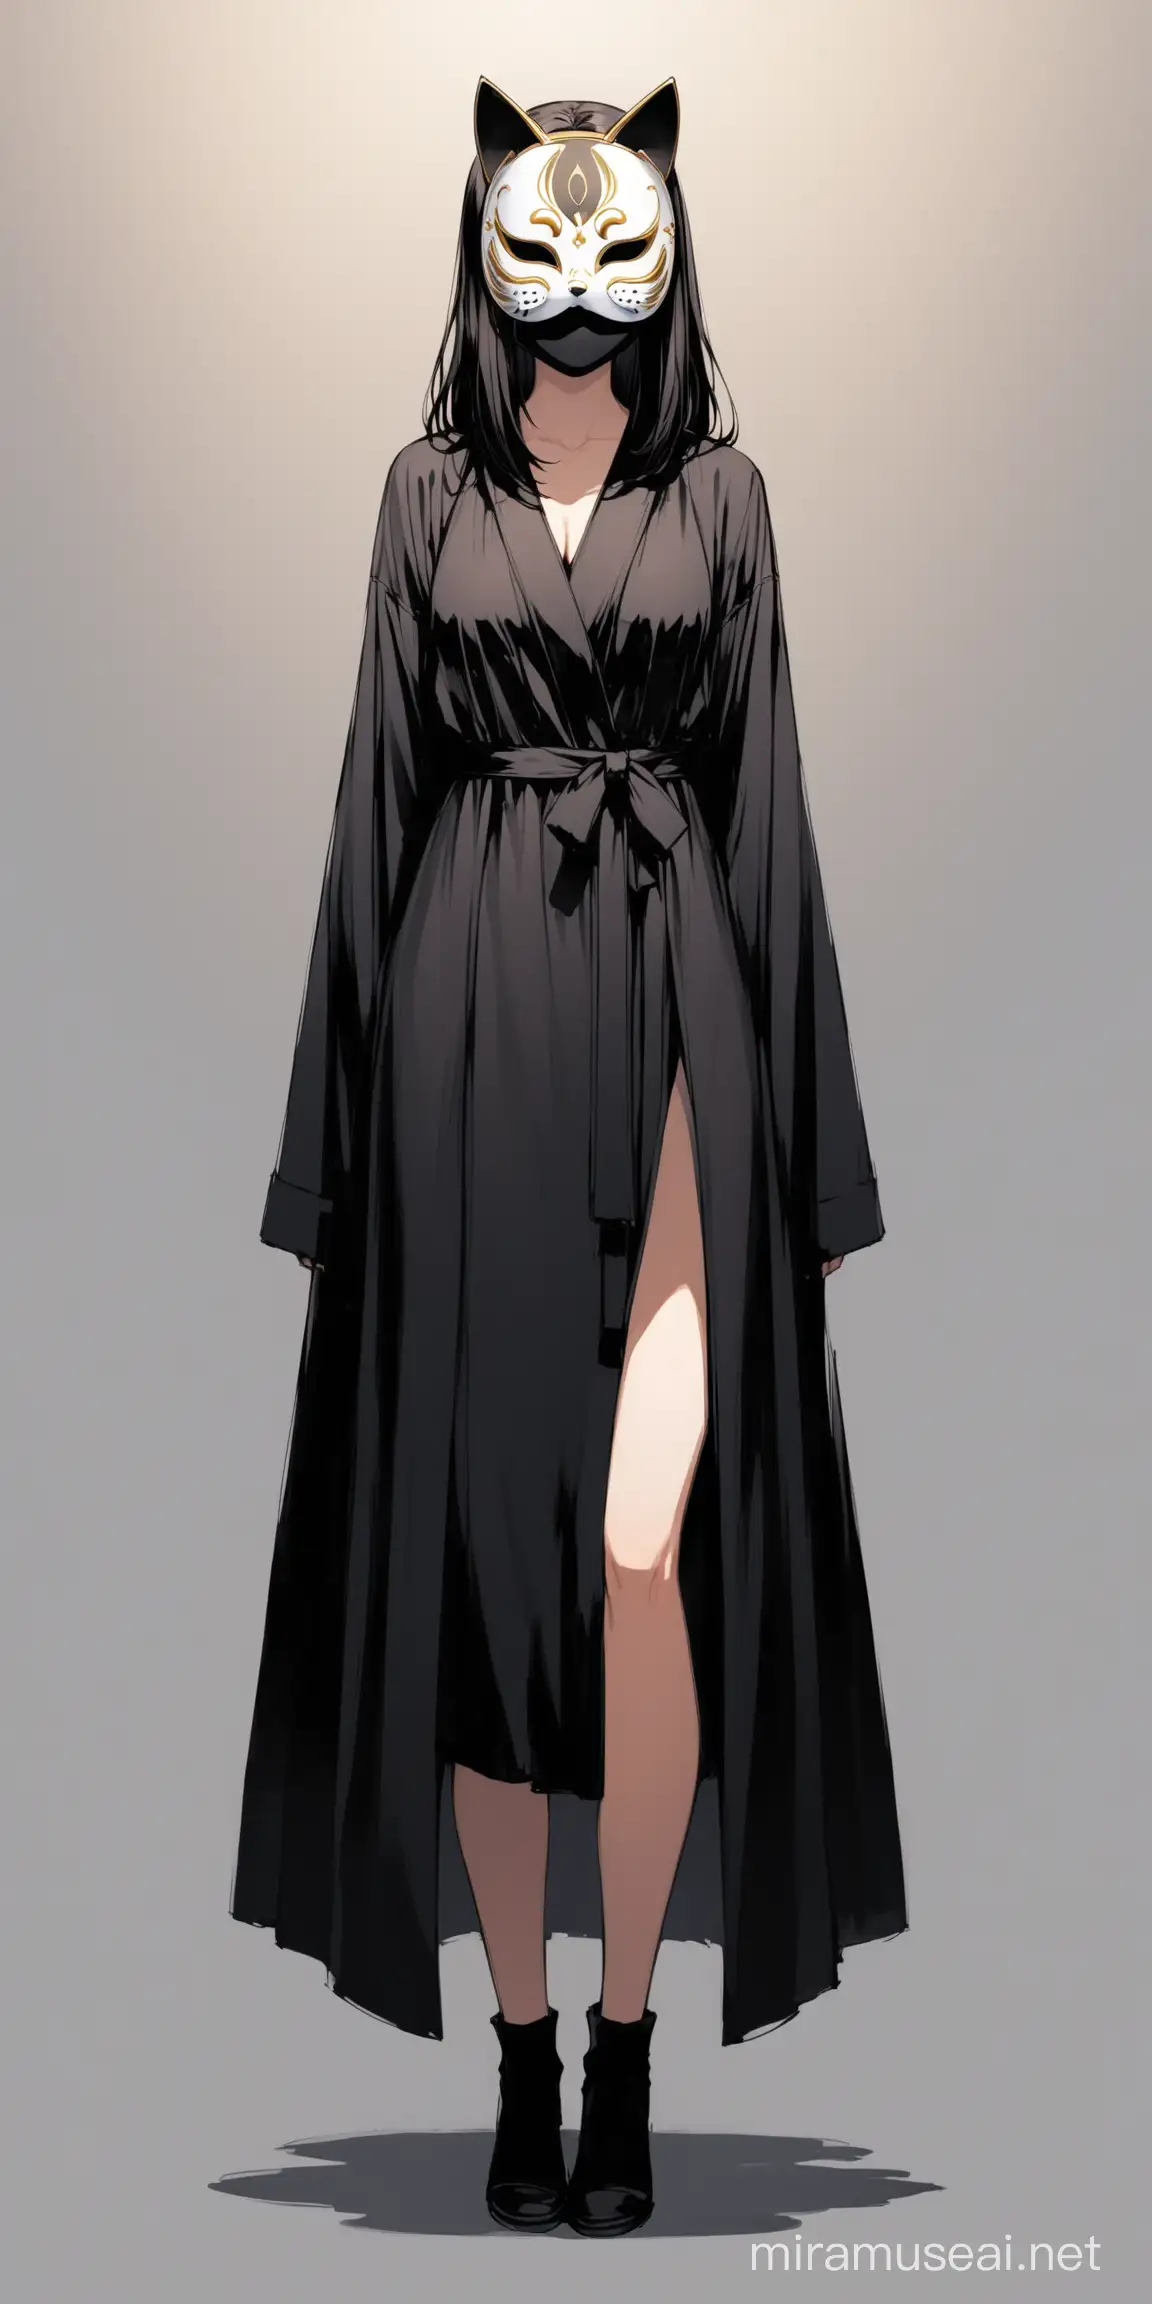 female, cat mask over face, black robe, full body